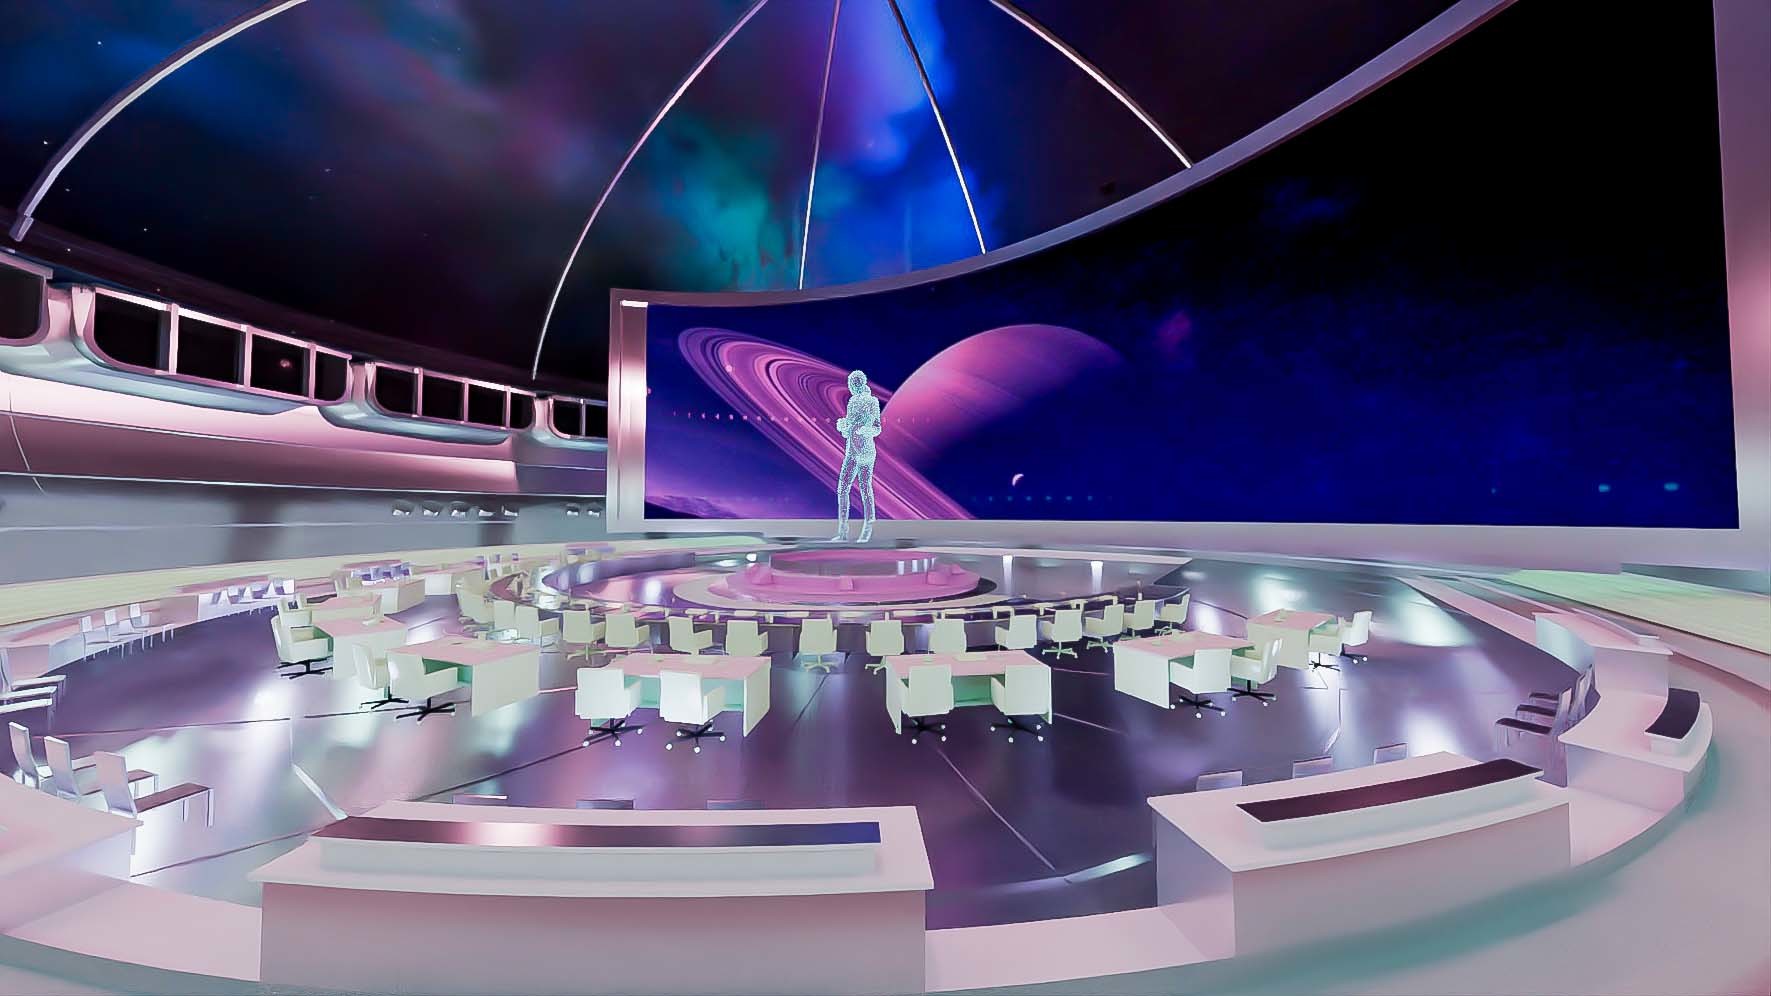 这是一张科幻风格的图片，展示了一个宇航员站在未来感十足的室内环境中，背景是太空和行星，色彩斑斓。